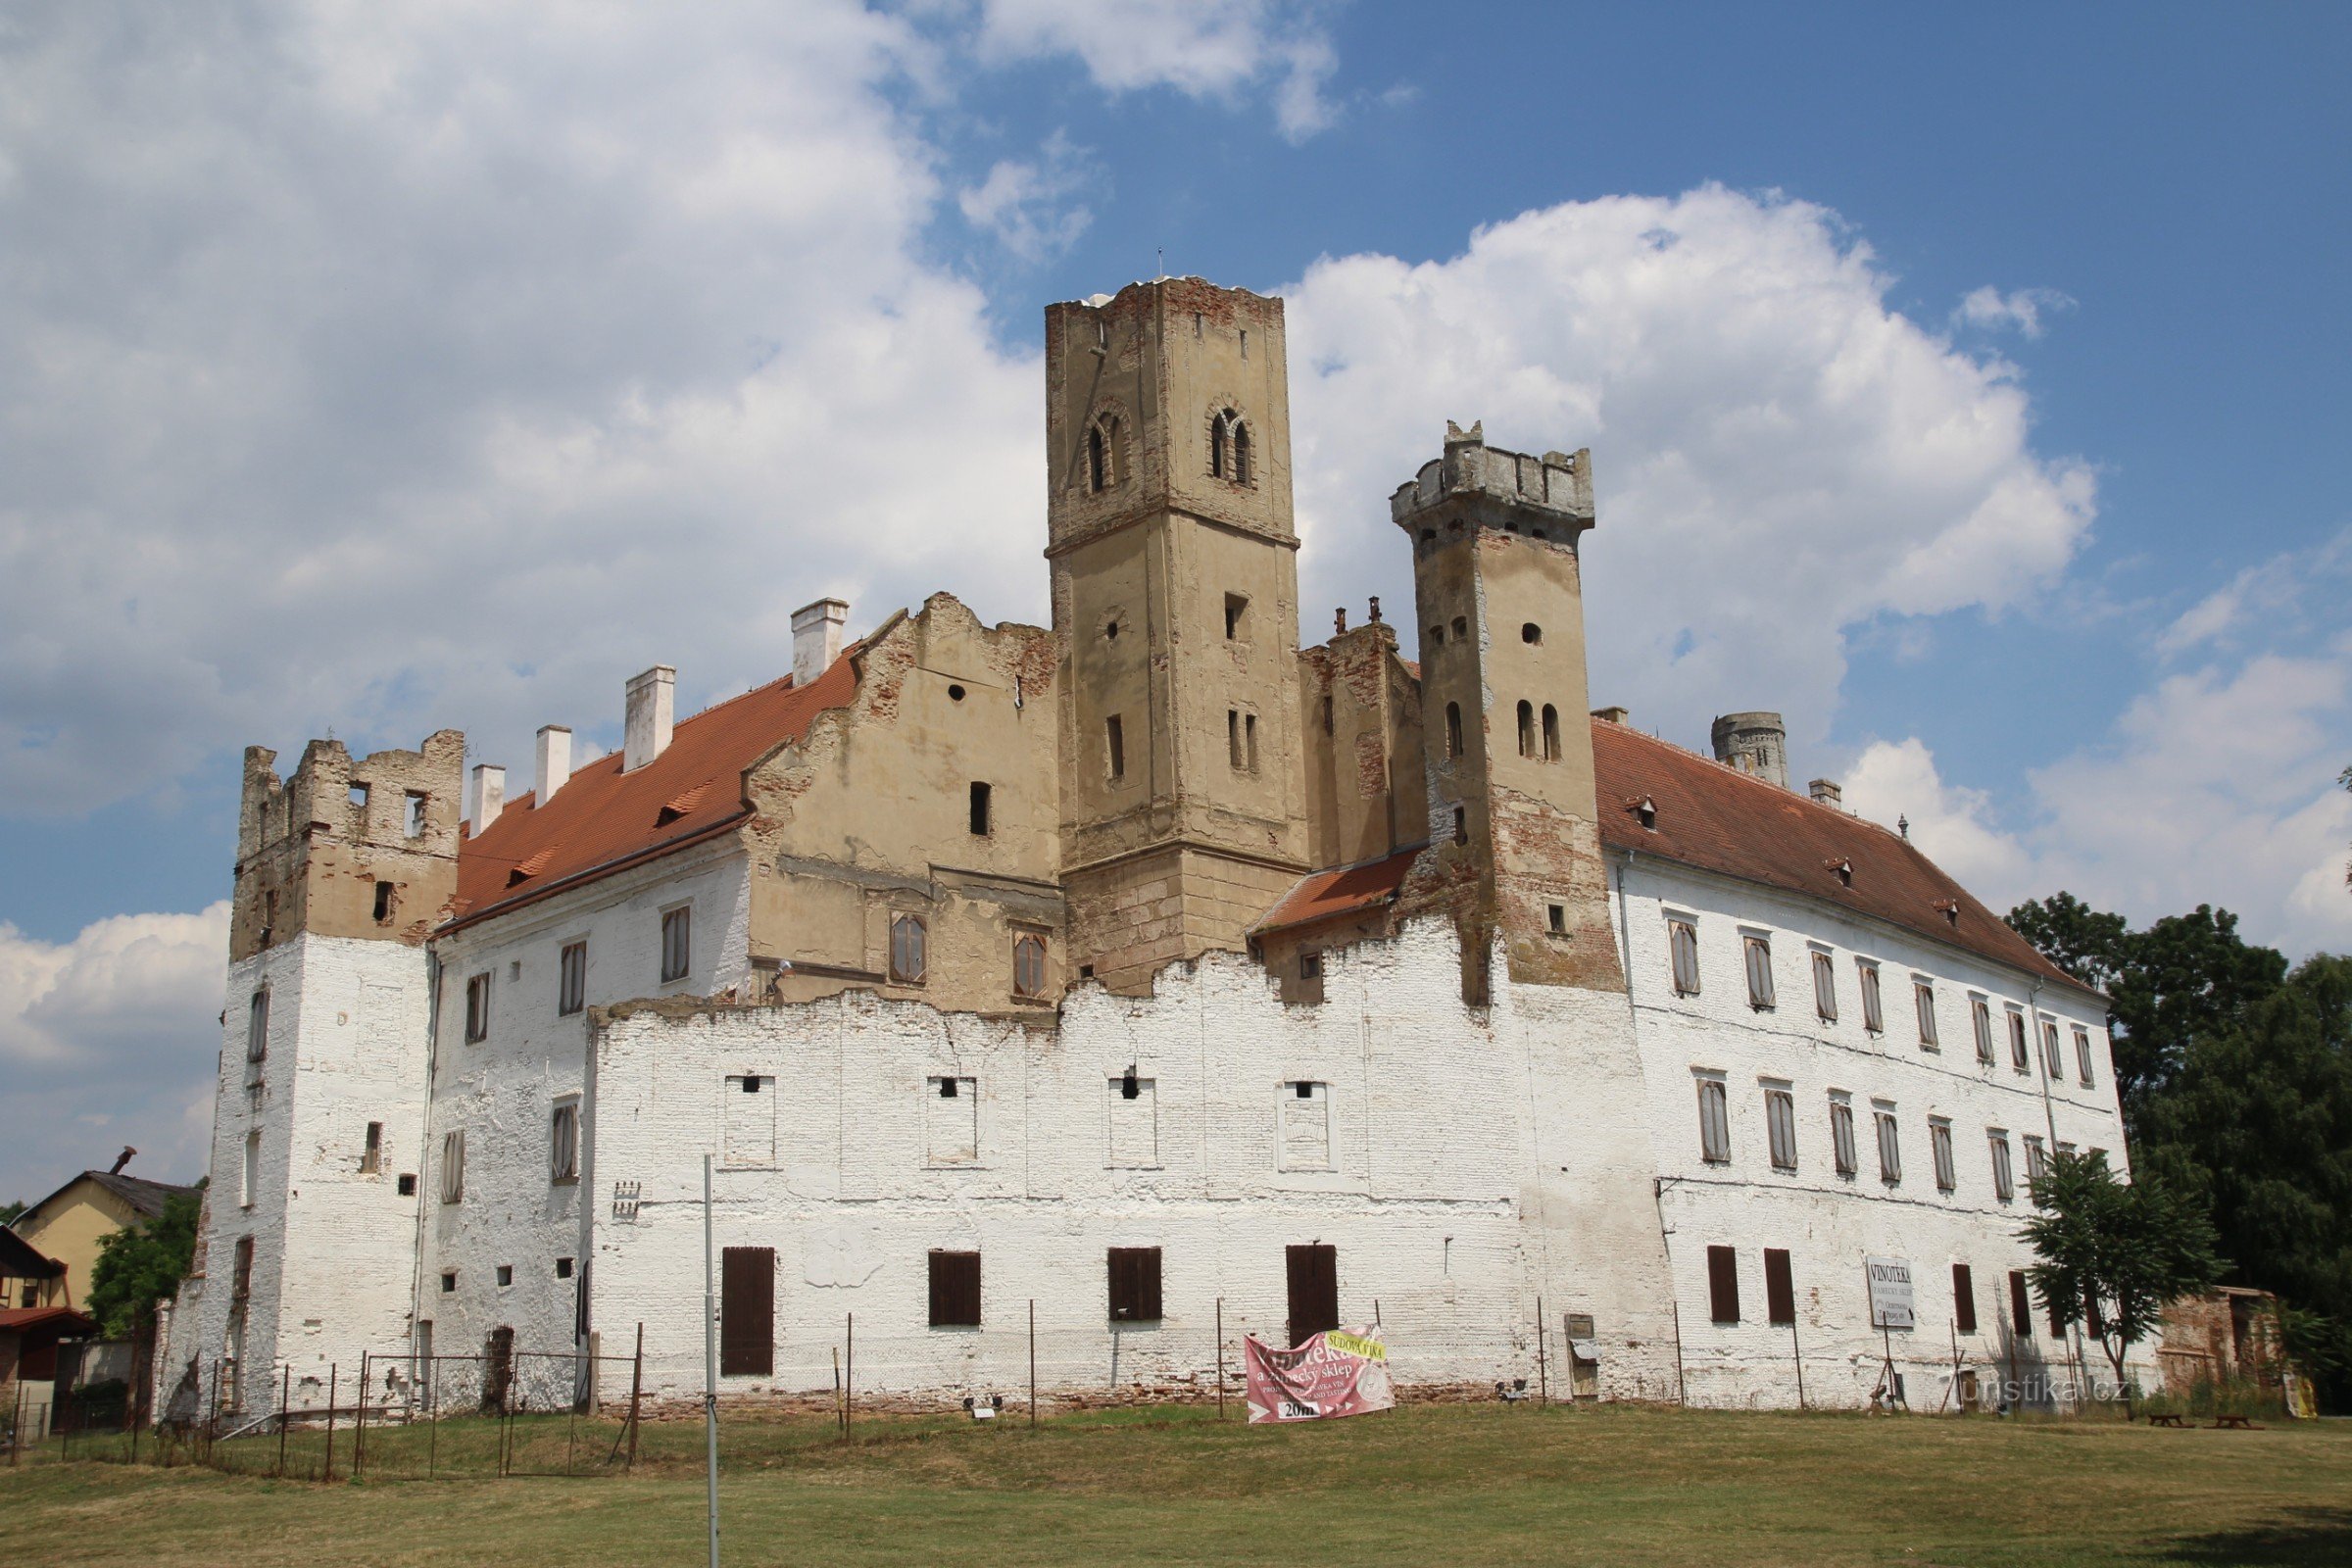 Pogled na grad Břeclav iz parka z dominantnim razglednim stolpom